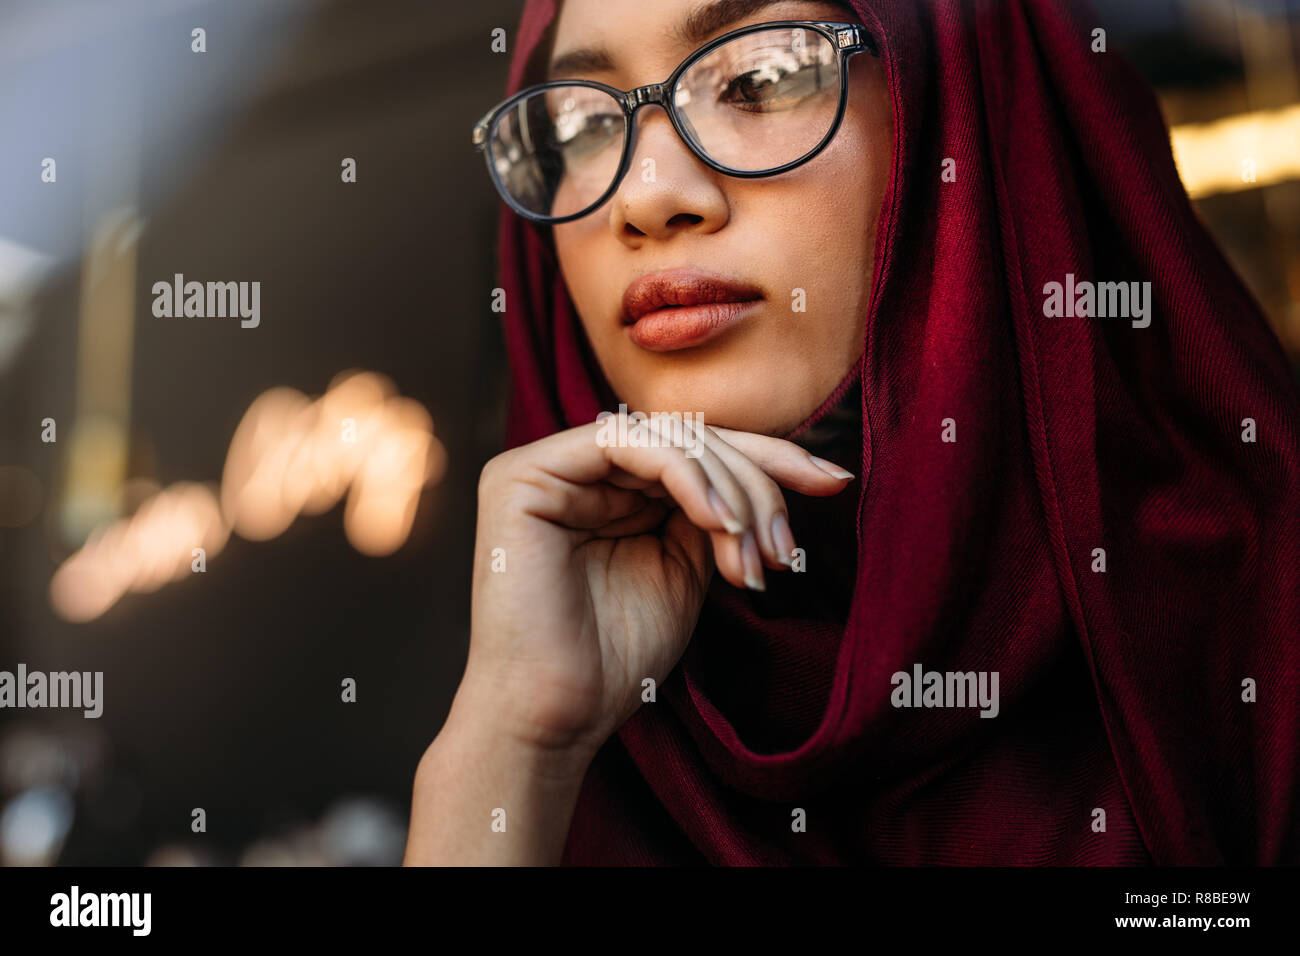 Close Up retrato de mujer joven llevar el hijab y anteojos con su mano en la barbilla apartar la mirada y el pensamiento. Mujer musulmana reflexiva mirando a otro lado. Foto de stock